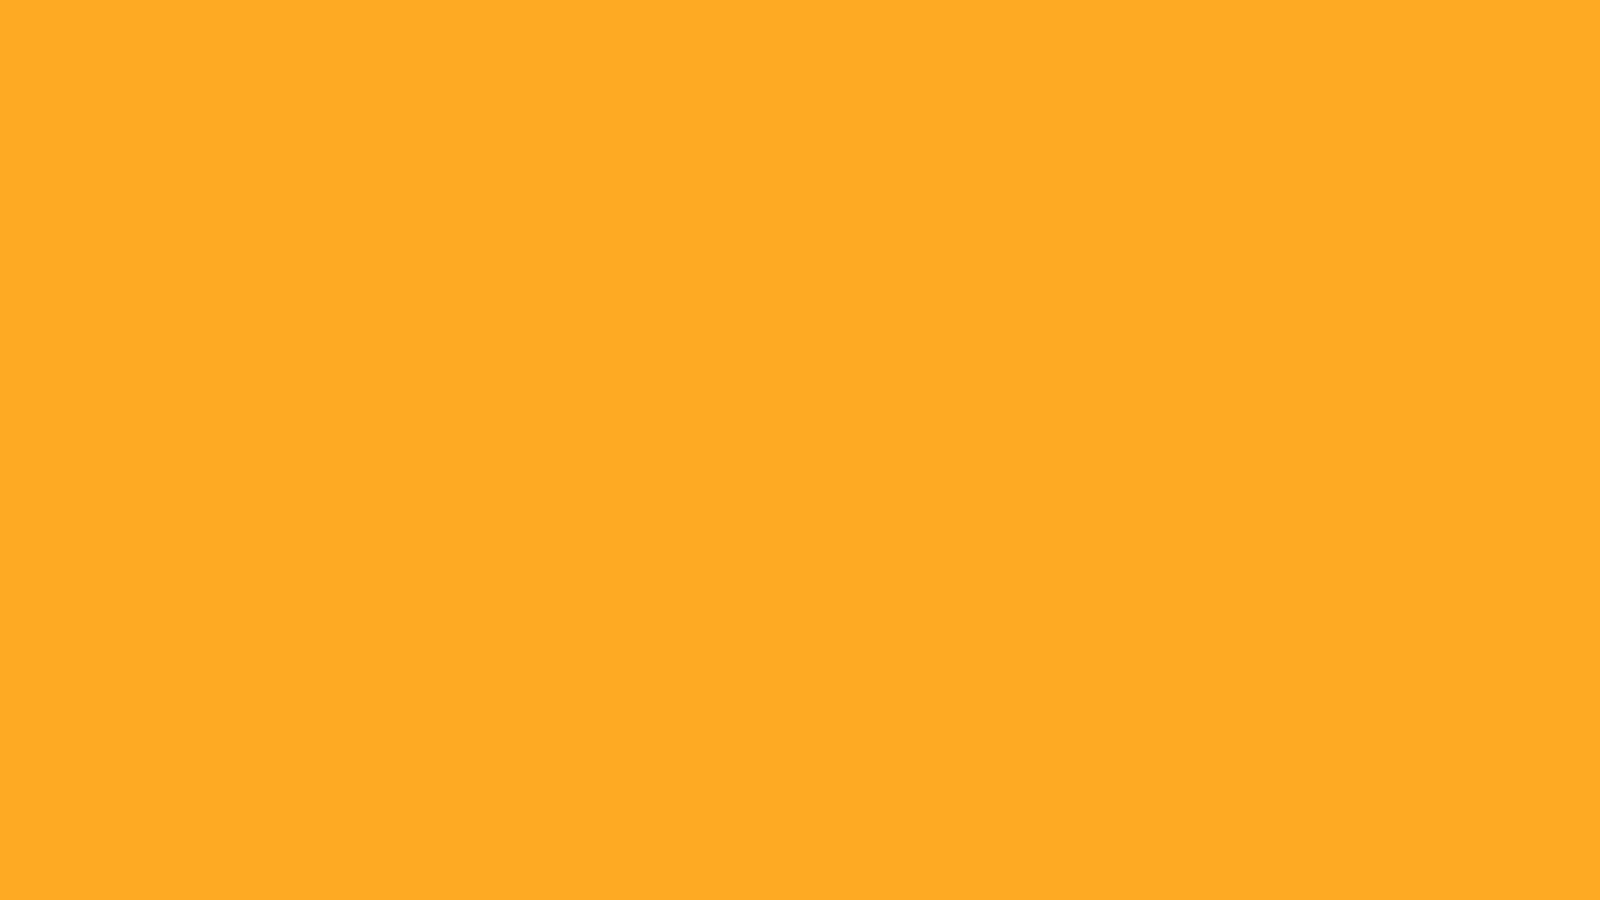 Bạn là người yêu thích hiệu ứng nền tảng và đang tìm kiếm một bức ảnh màu cam để làm hình nền cho thiết bị của mình? Hãy truy cập ngay vào trang web của chúng tôi để tải về Hình nền màu cam với hiệu ứng nền tảng 1600x900!